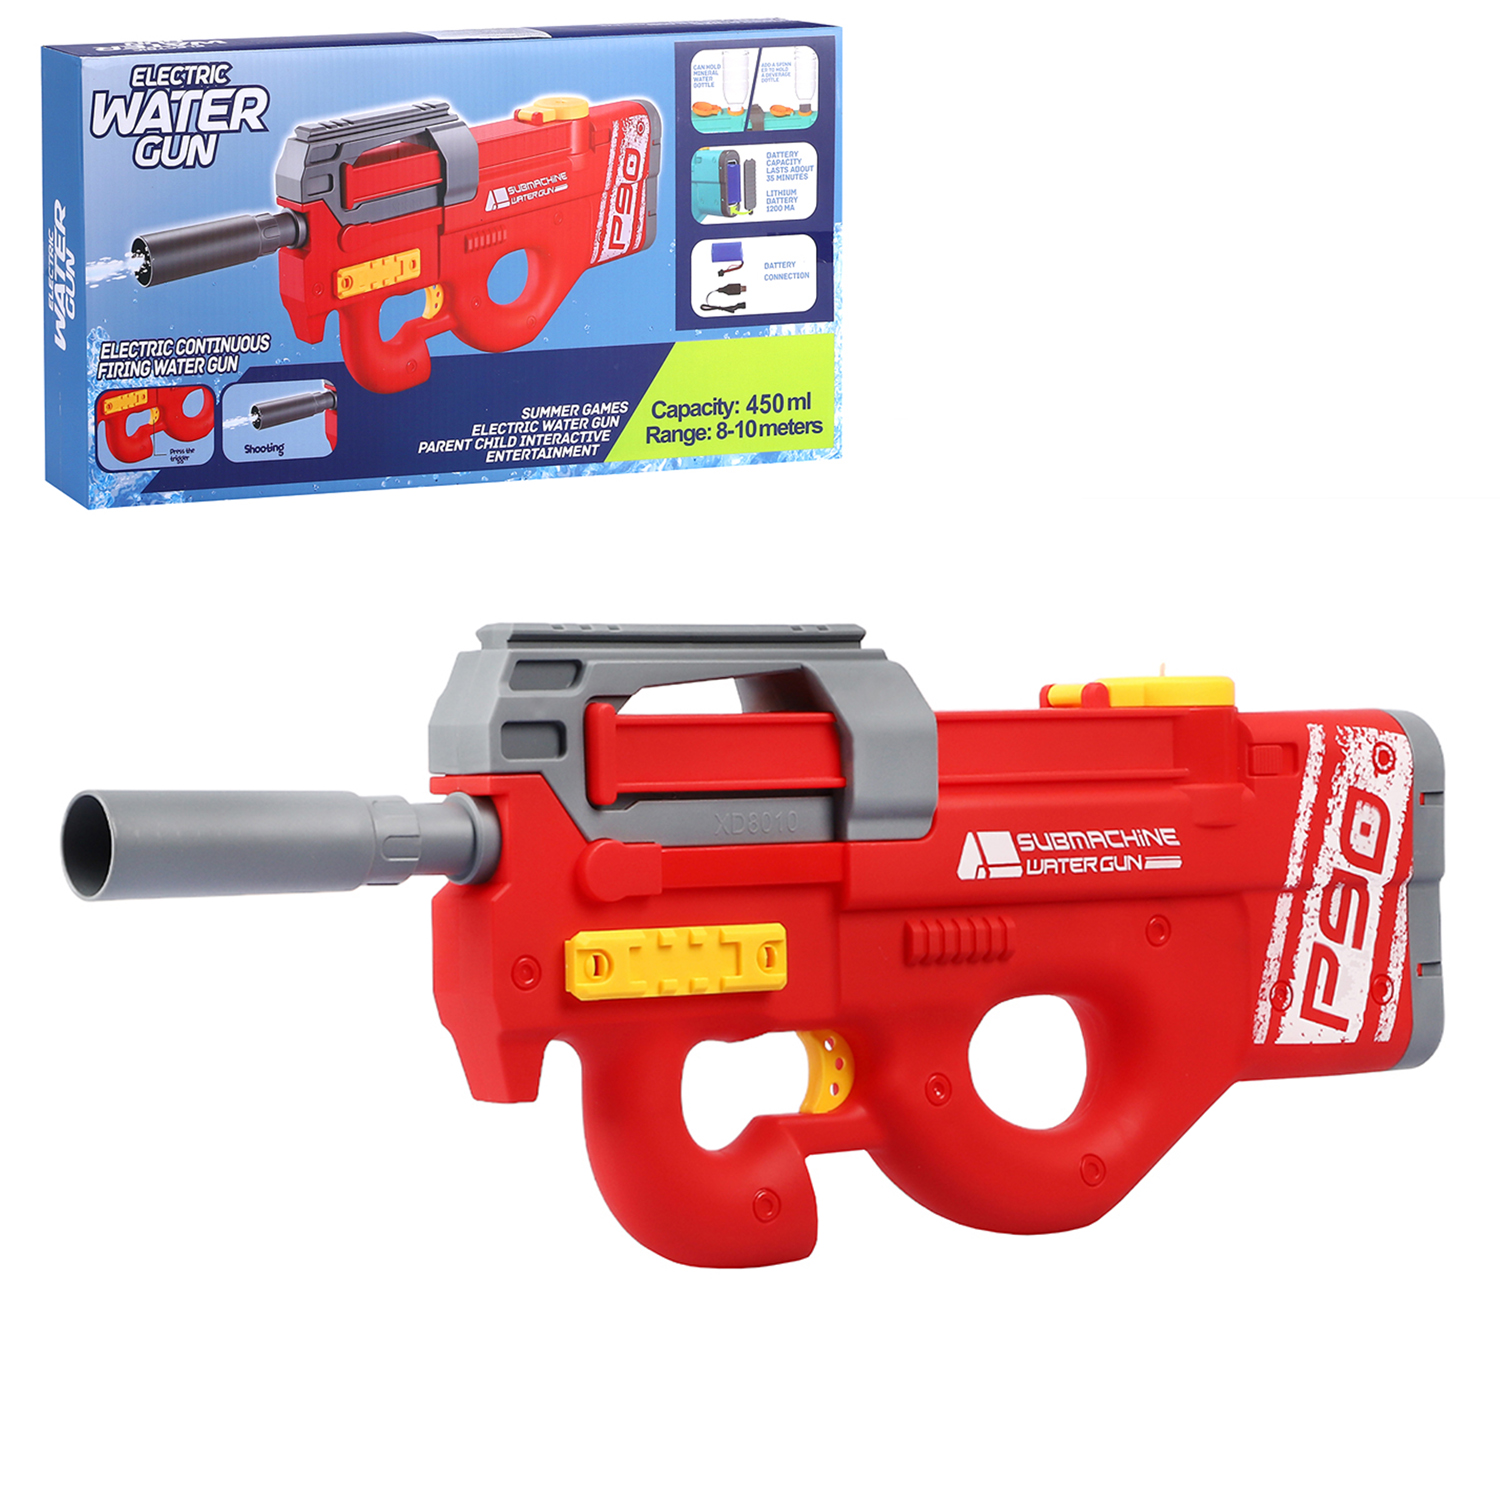 Водный пистолет игрушечный, электропистолет, на аккумуляторе, красный, JB0211236 водяное оружие на аккумуляторе пистолет игрушечный с функцией спрея водный бой jb0211498